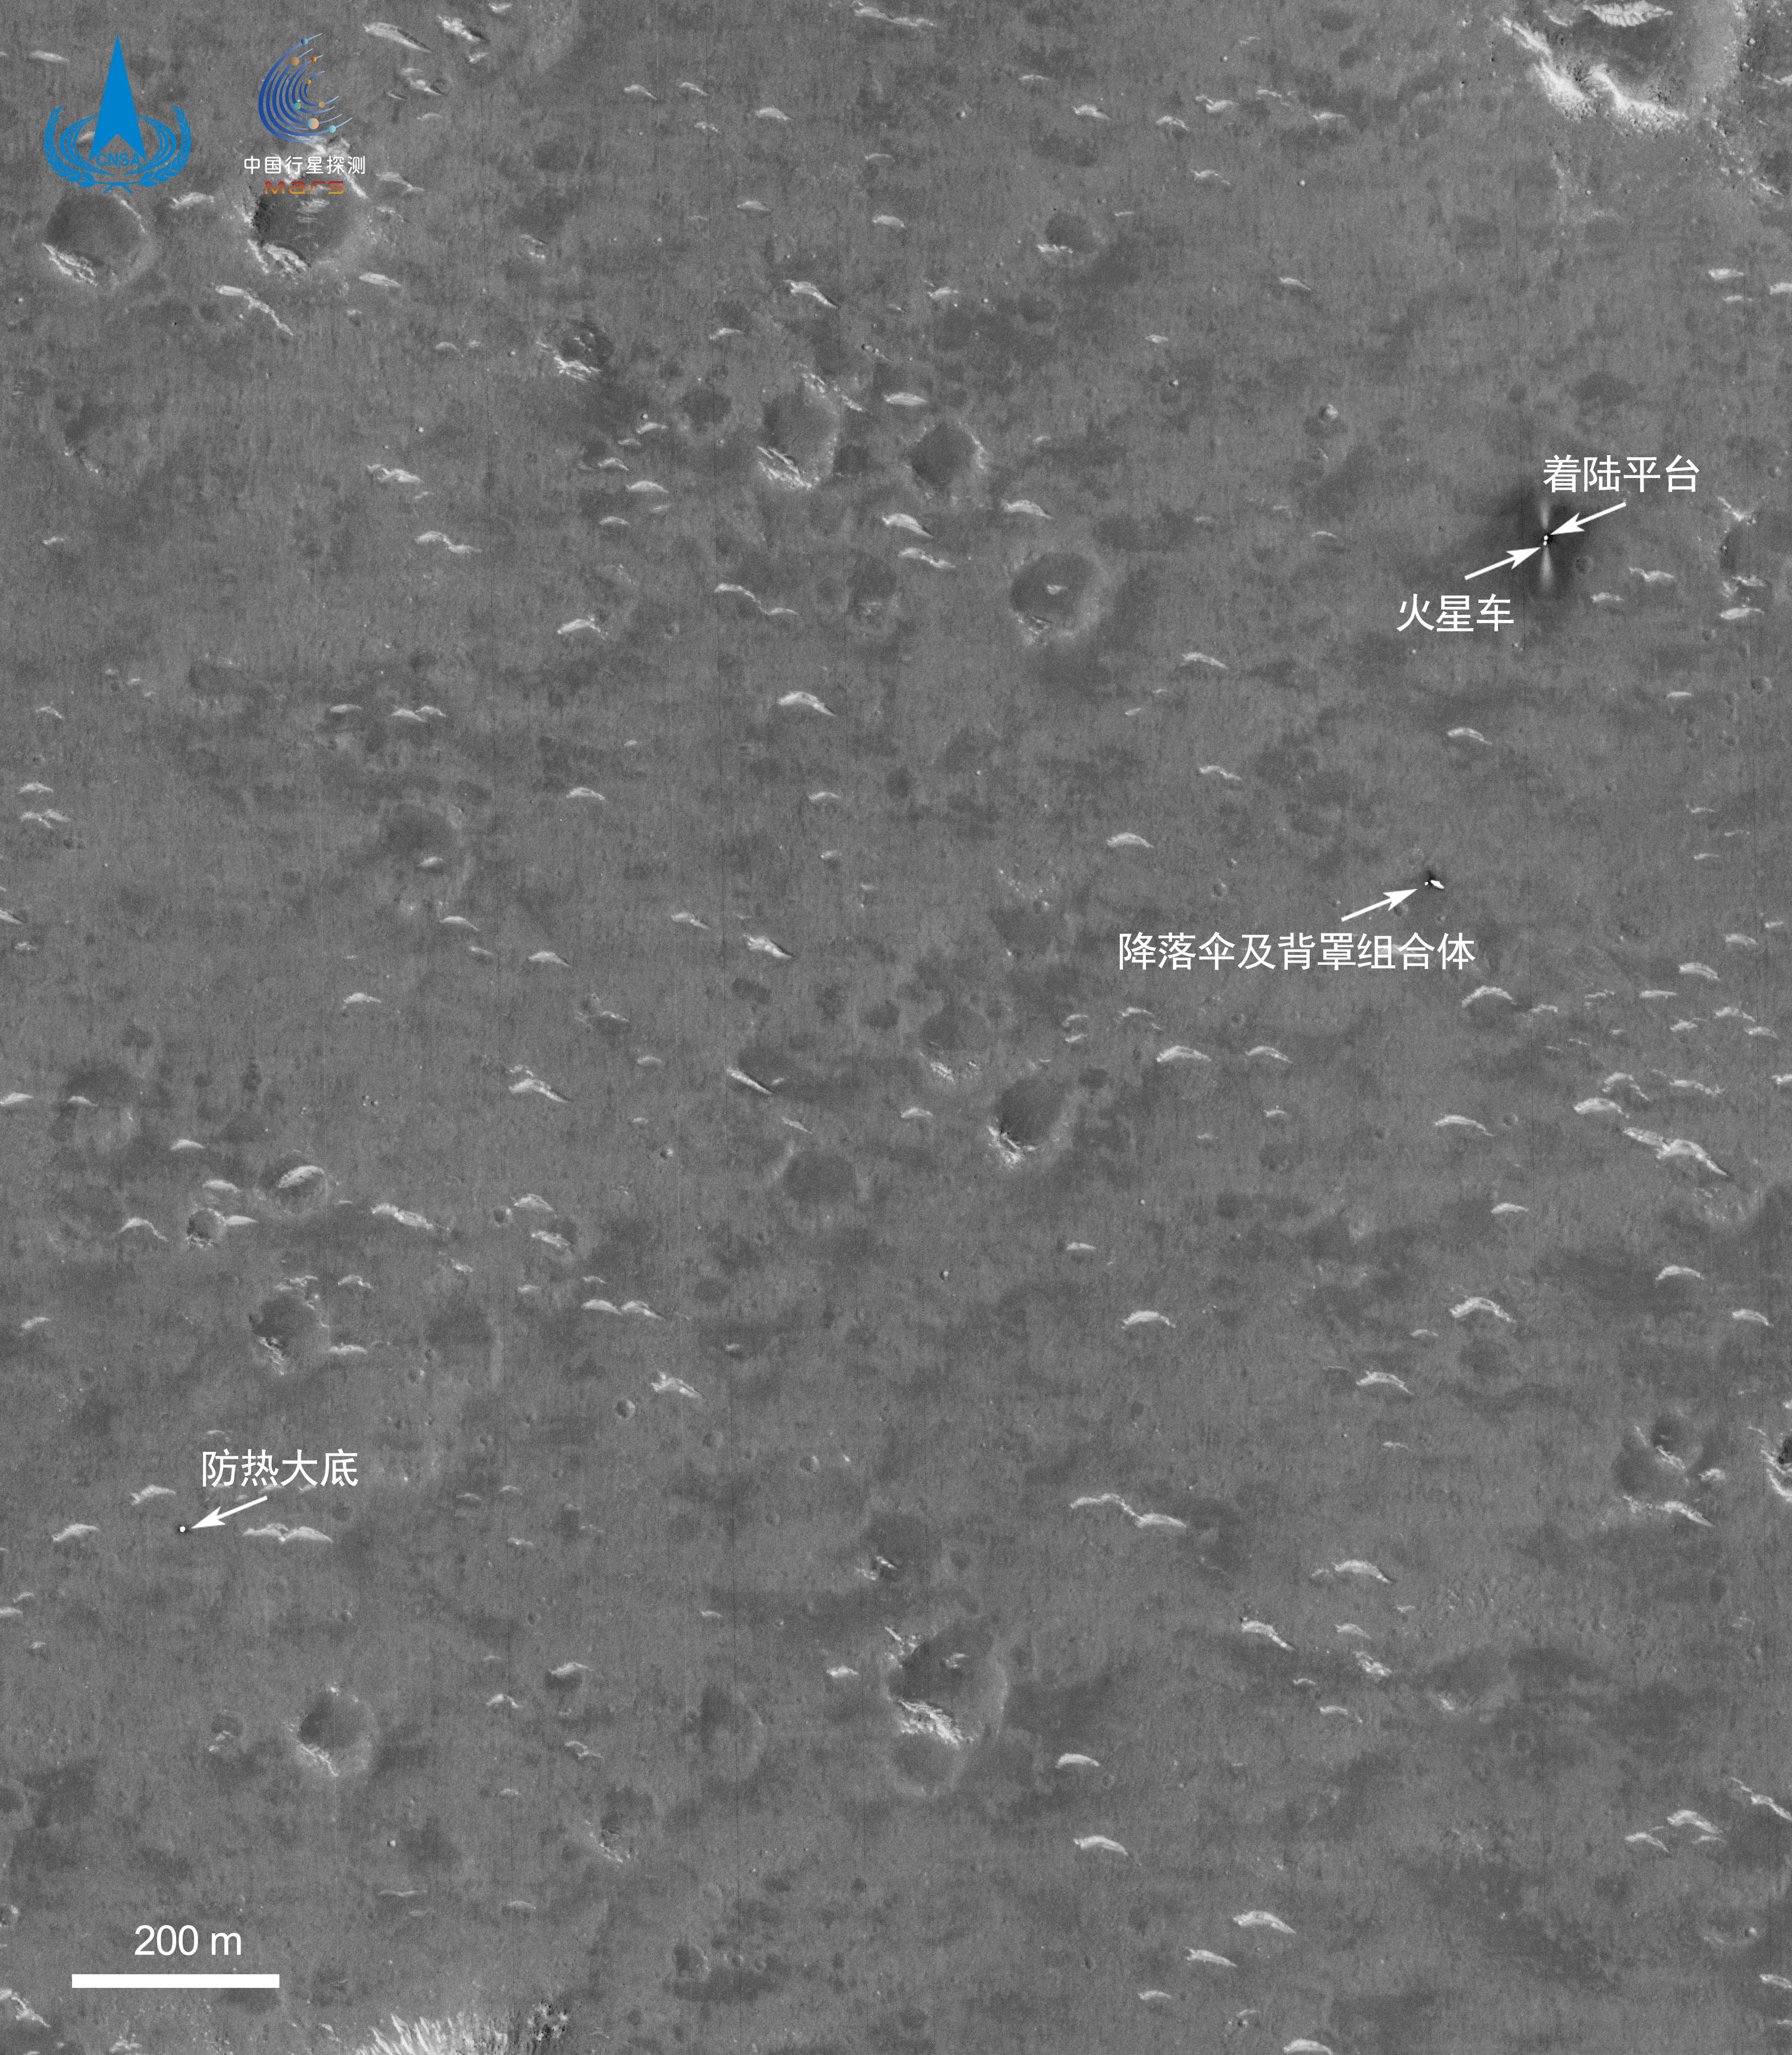 火星车清晰可辨 登火痕迹公开 天问一号高分相机火星上空开机 着陆